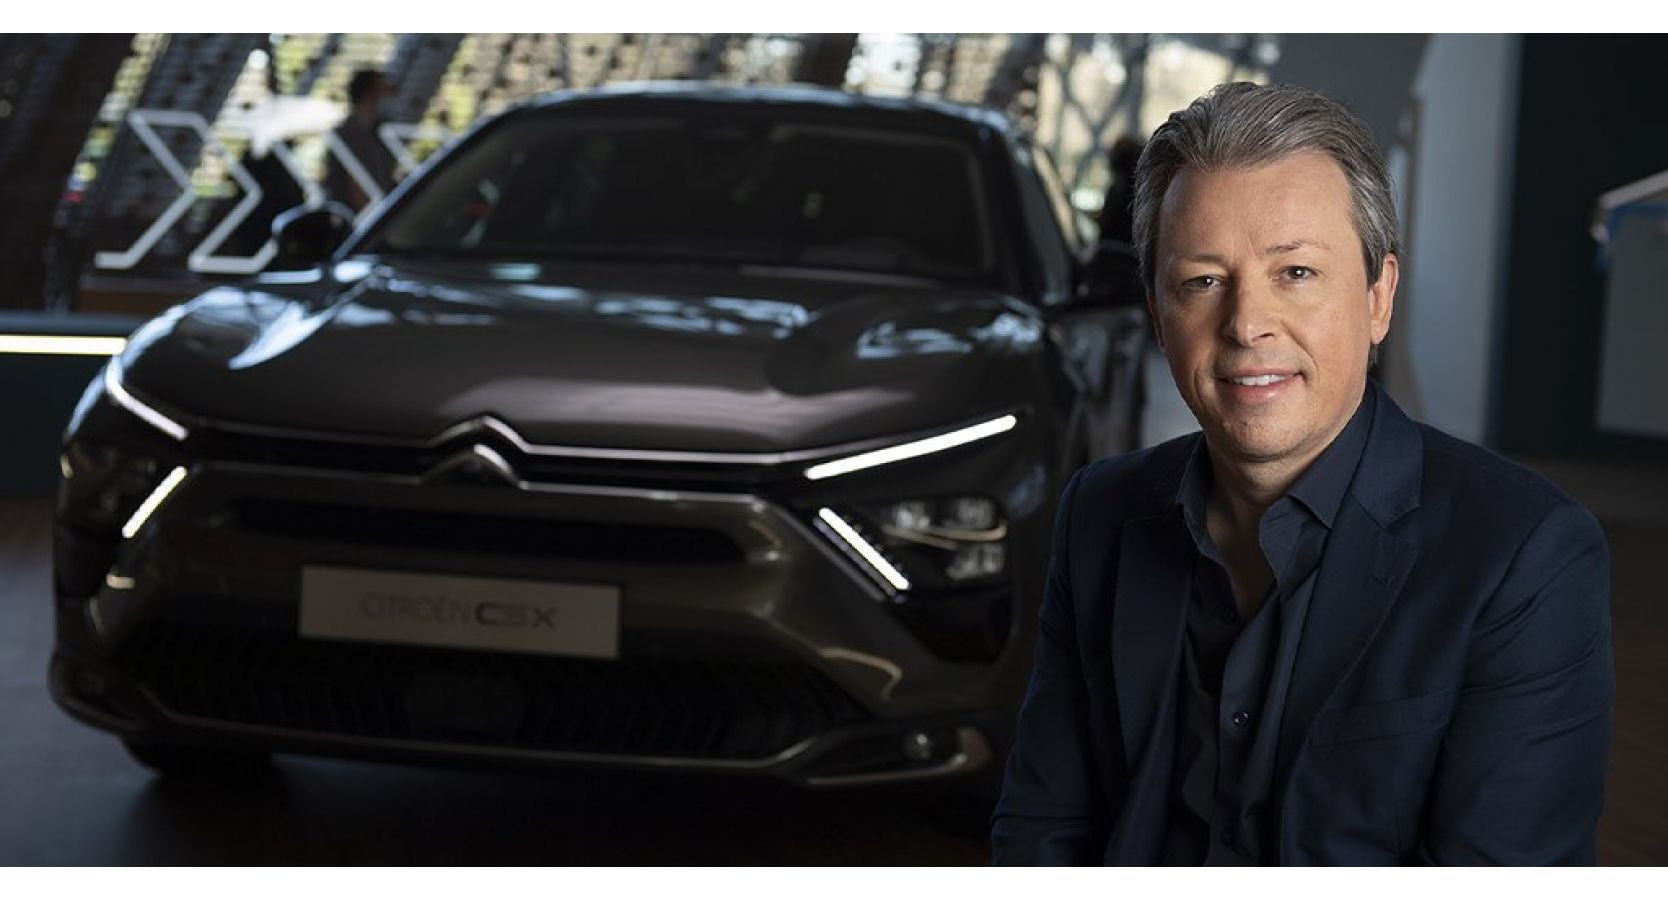 Citroën Talks: “Pensar diferente y proponer soluciones disruptivas, eso es Citroën”, Pierre Leclercq, Director global de Diseño